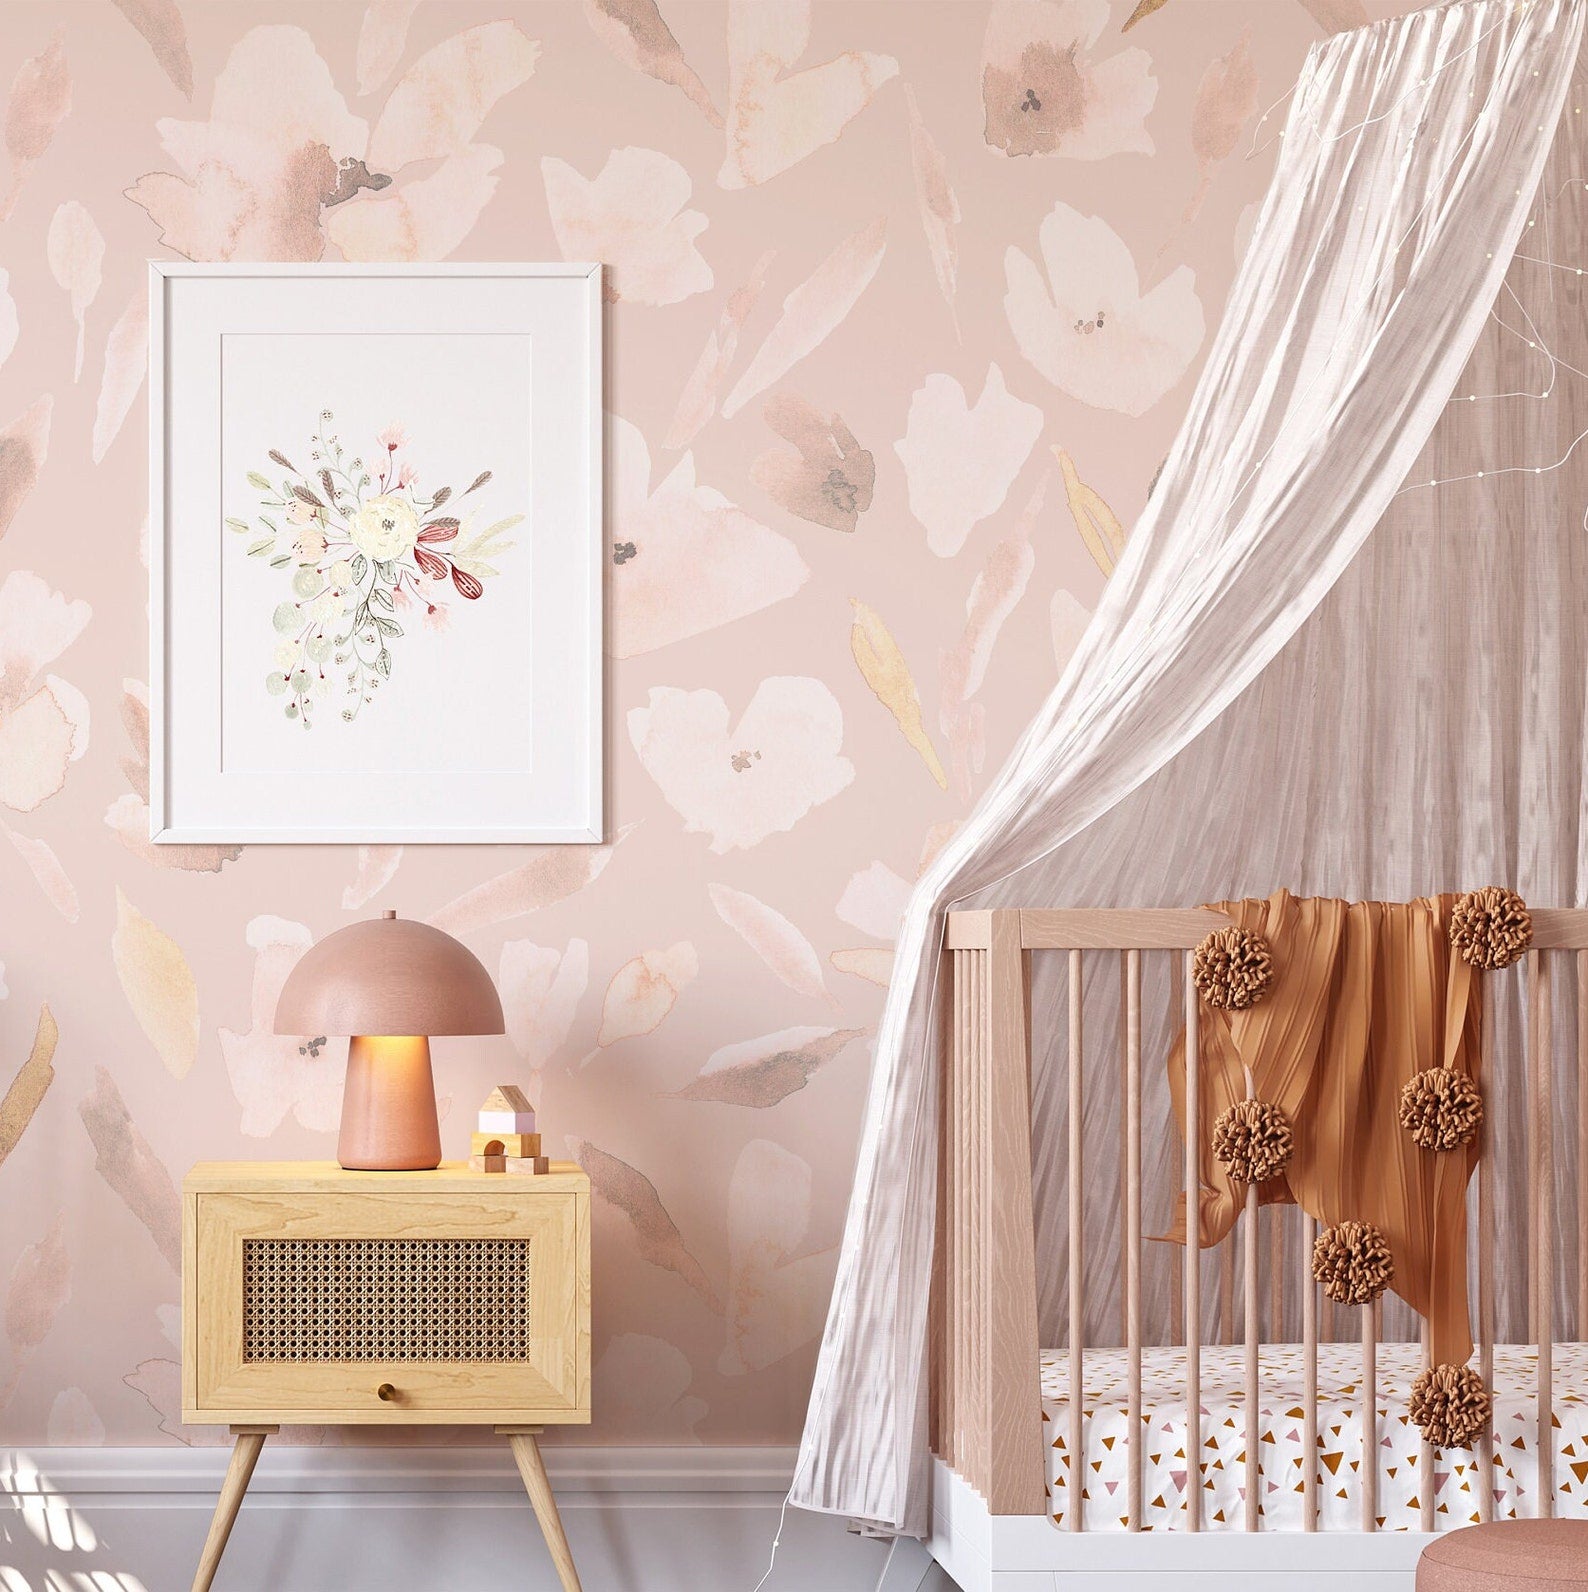 DIY Framed Wallpaper Panels in Gorgeous Nursery  Project Nursery